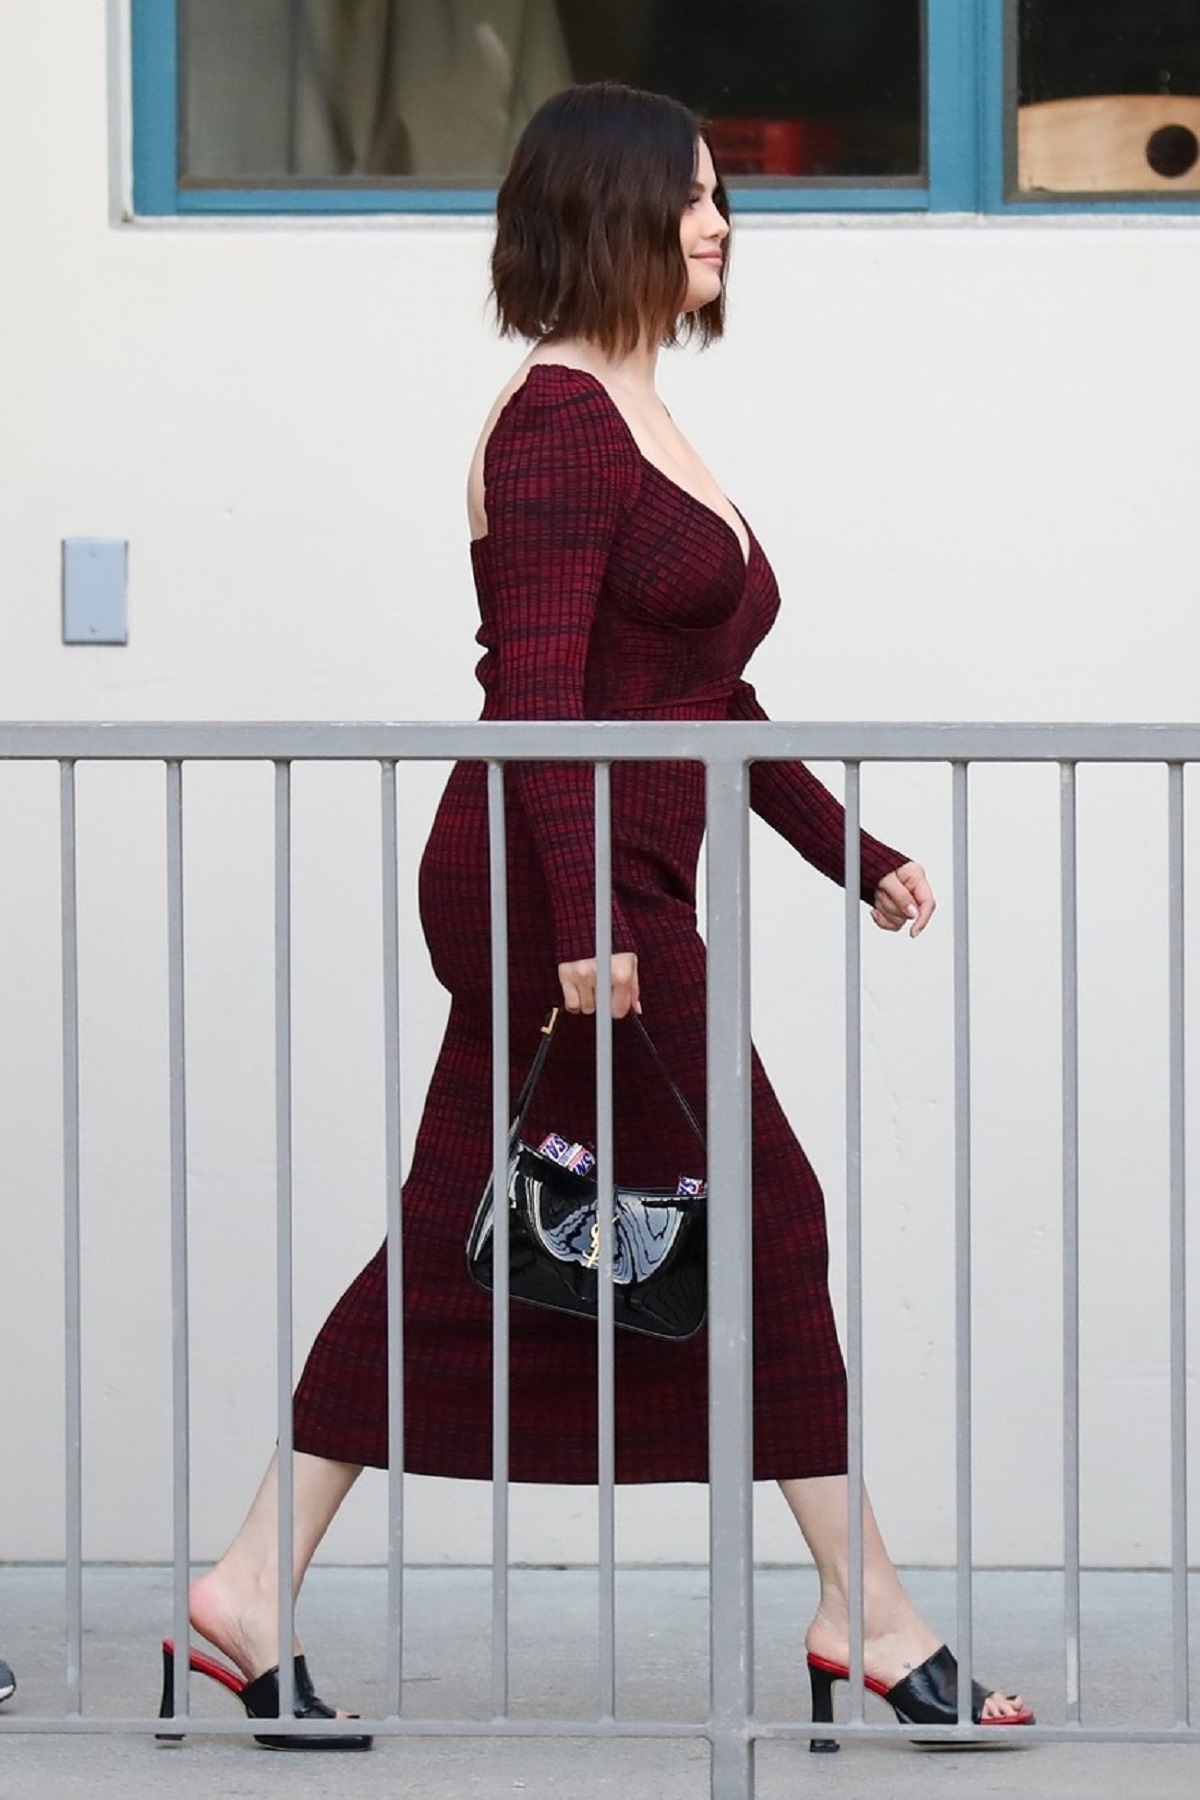 Selena Gomez într-o rochie burgundy în tip ce se află după un gard de protecție